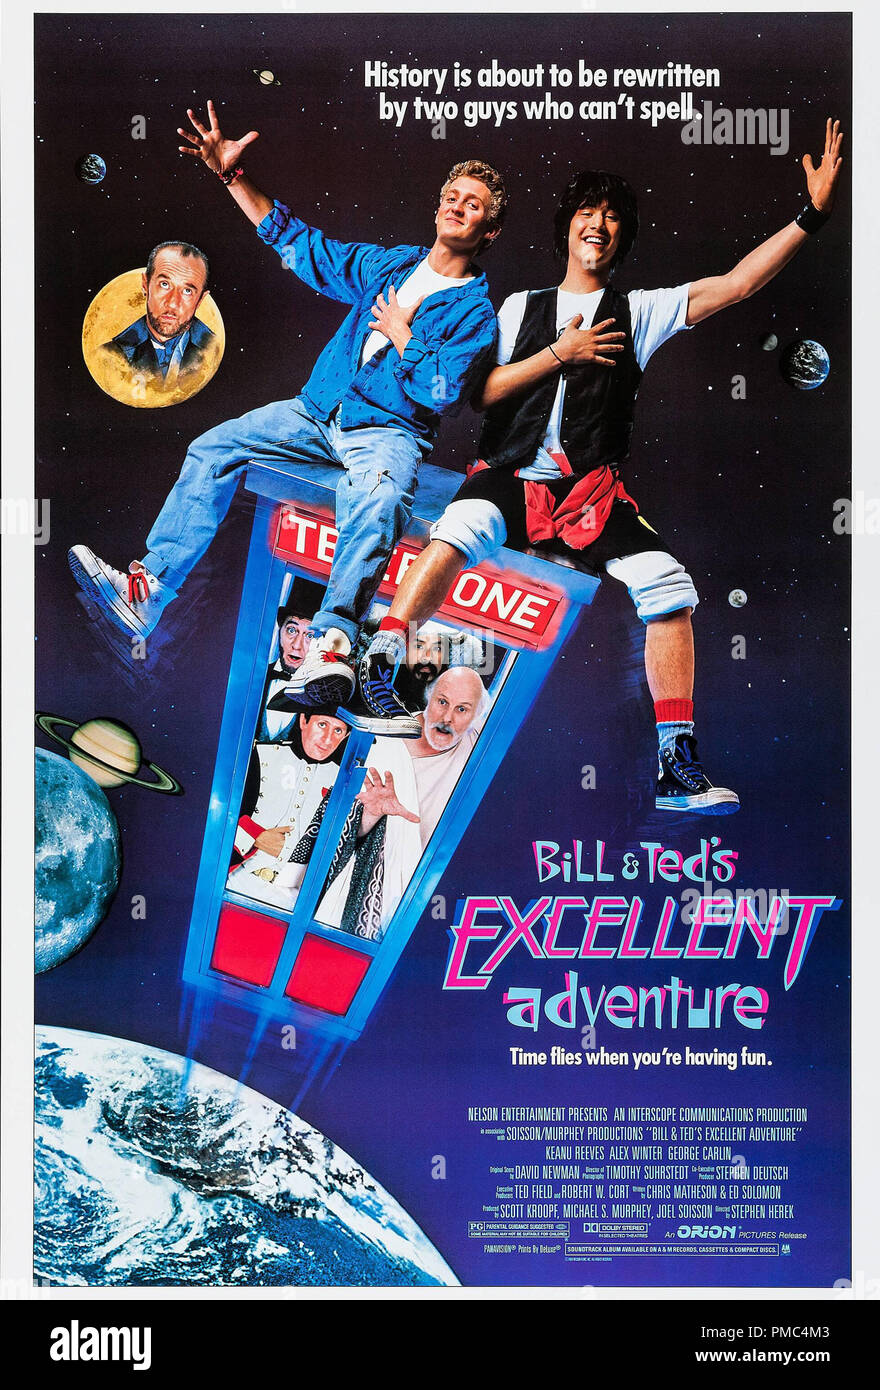 Keanu Reeves, Bill & Ted's ausgezeichneten Abenteuer (Orion, 1989). Poster Datei Referenz # 33595 858 THA Stockfoto